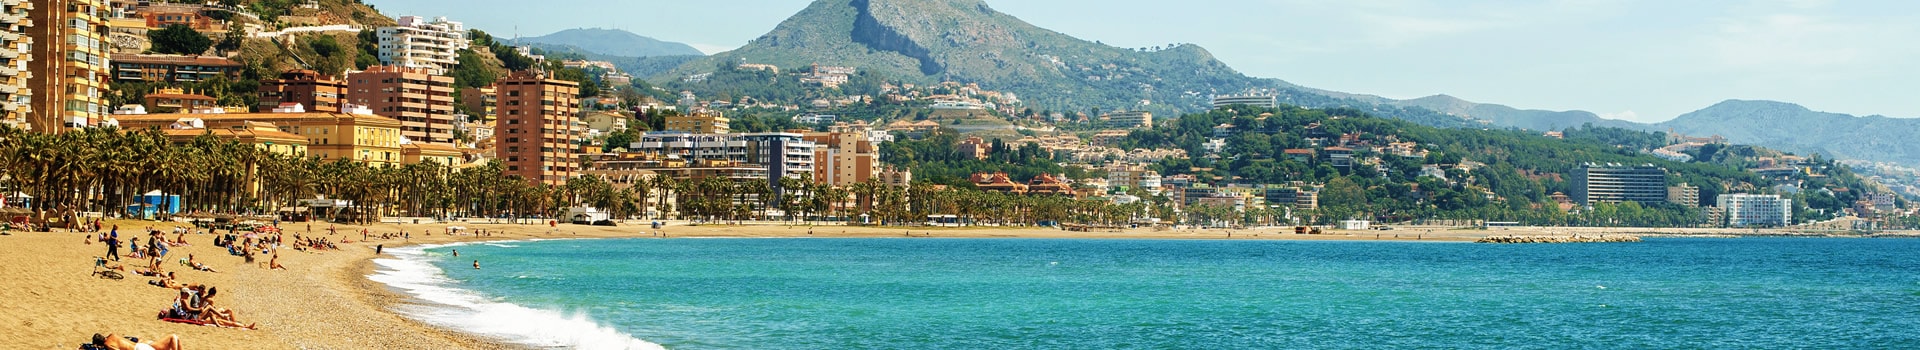 Viajes a Málaga | Vacaciones desde 259€ | Logitravel